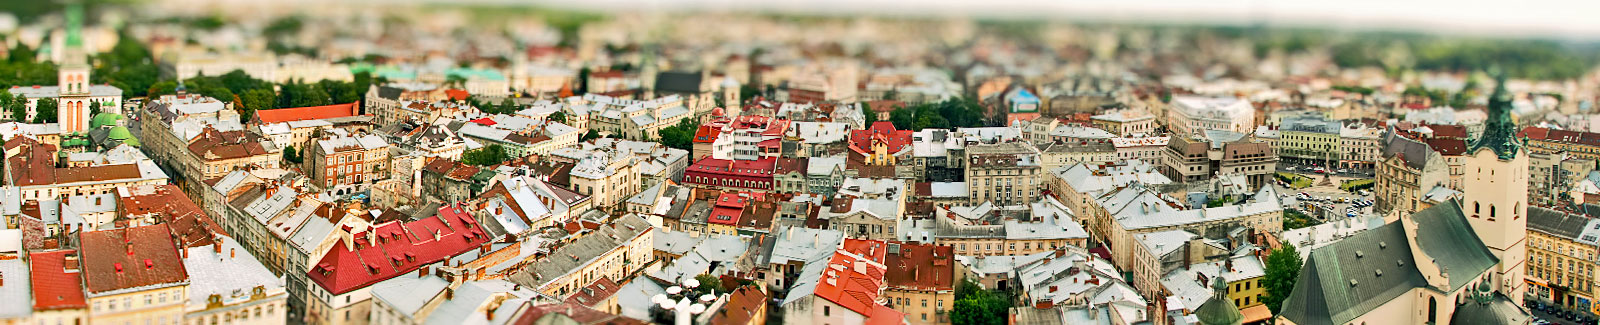 Contemporary Lviv – Past Lviv. A Multicultural Portrait of the City